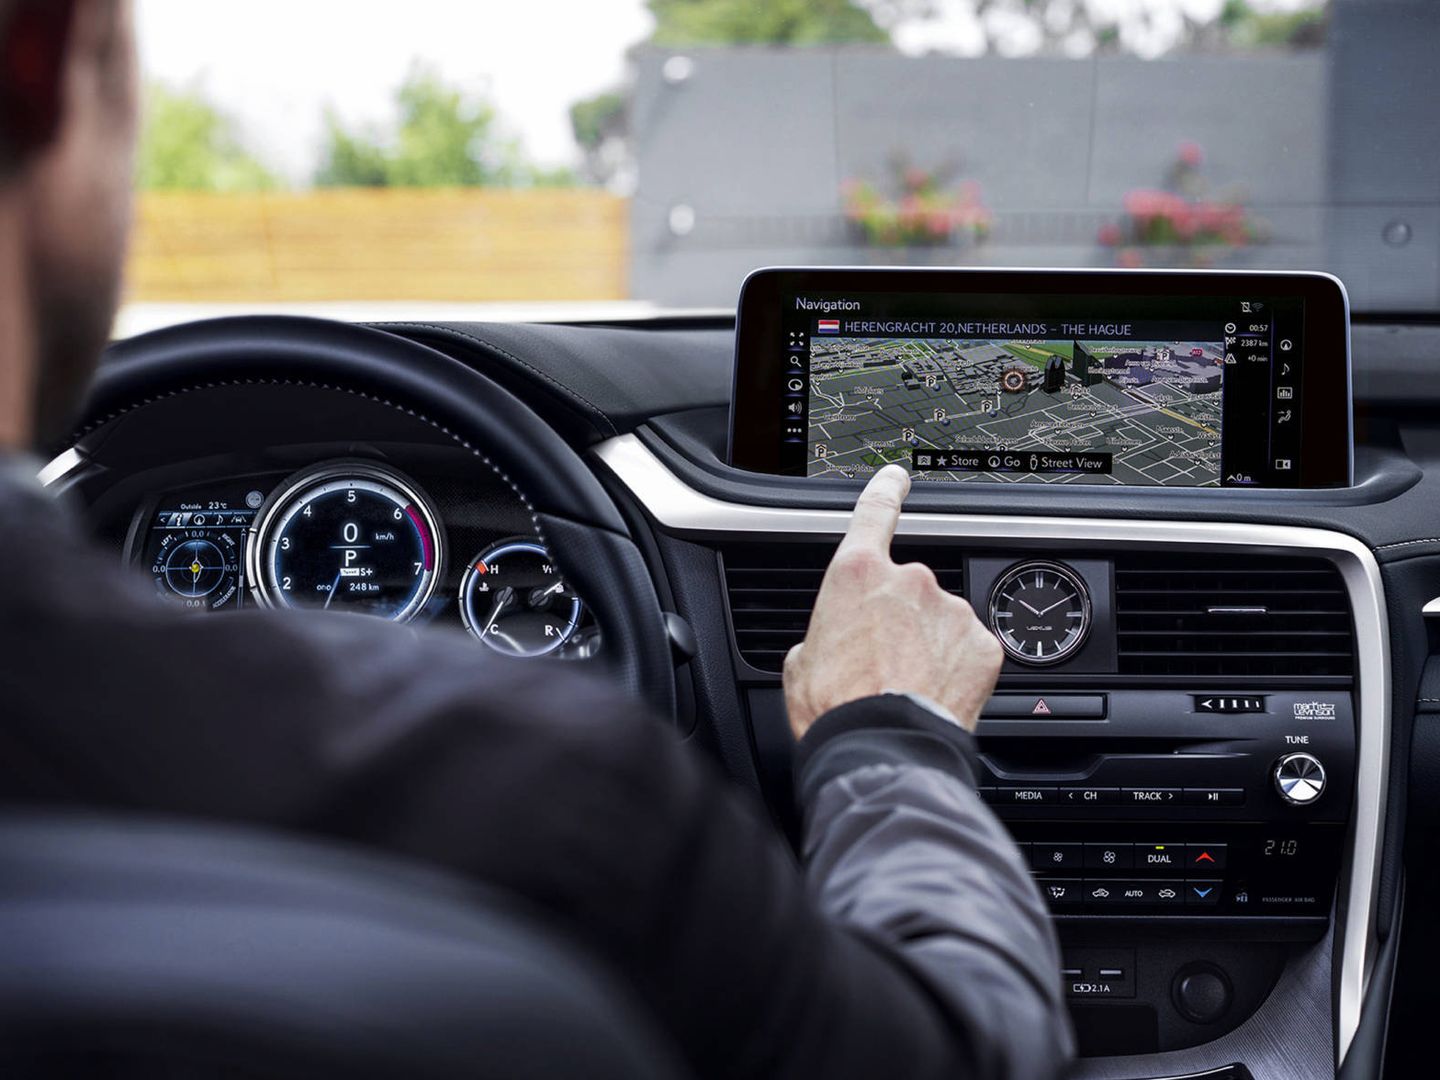 El nuevo RX 450h incorpora una nueva pantalla táctil además de la interfaz táctil remota original de Lexus.